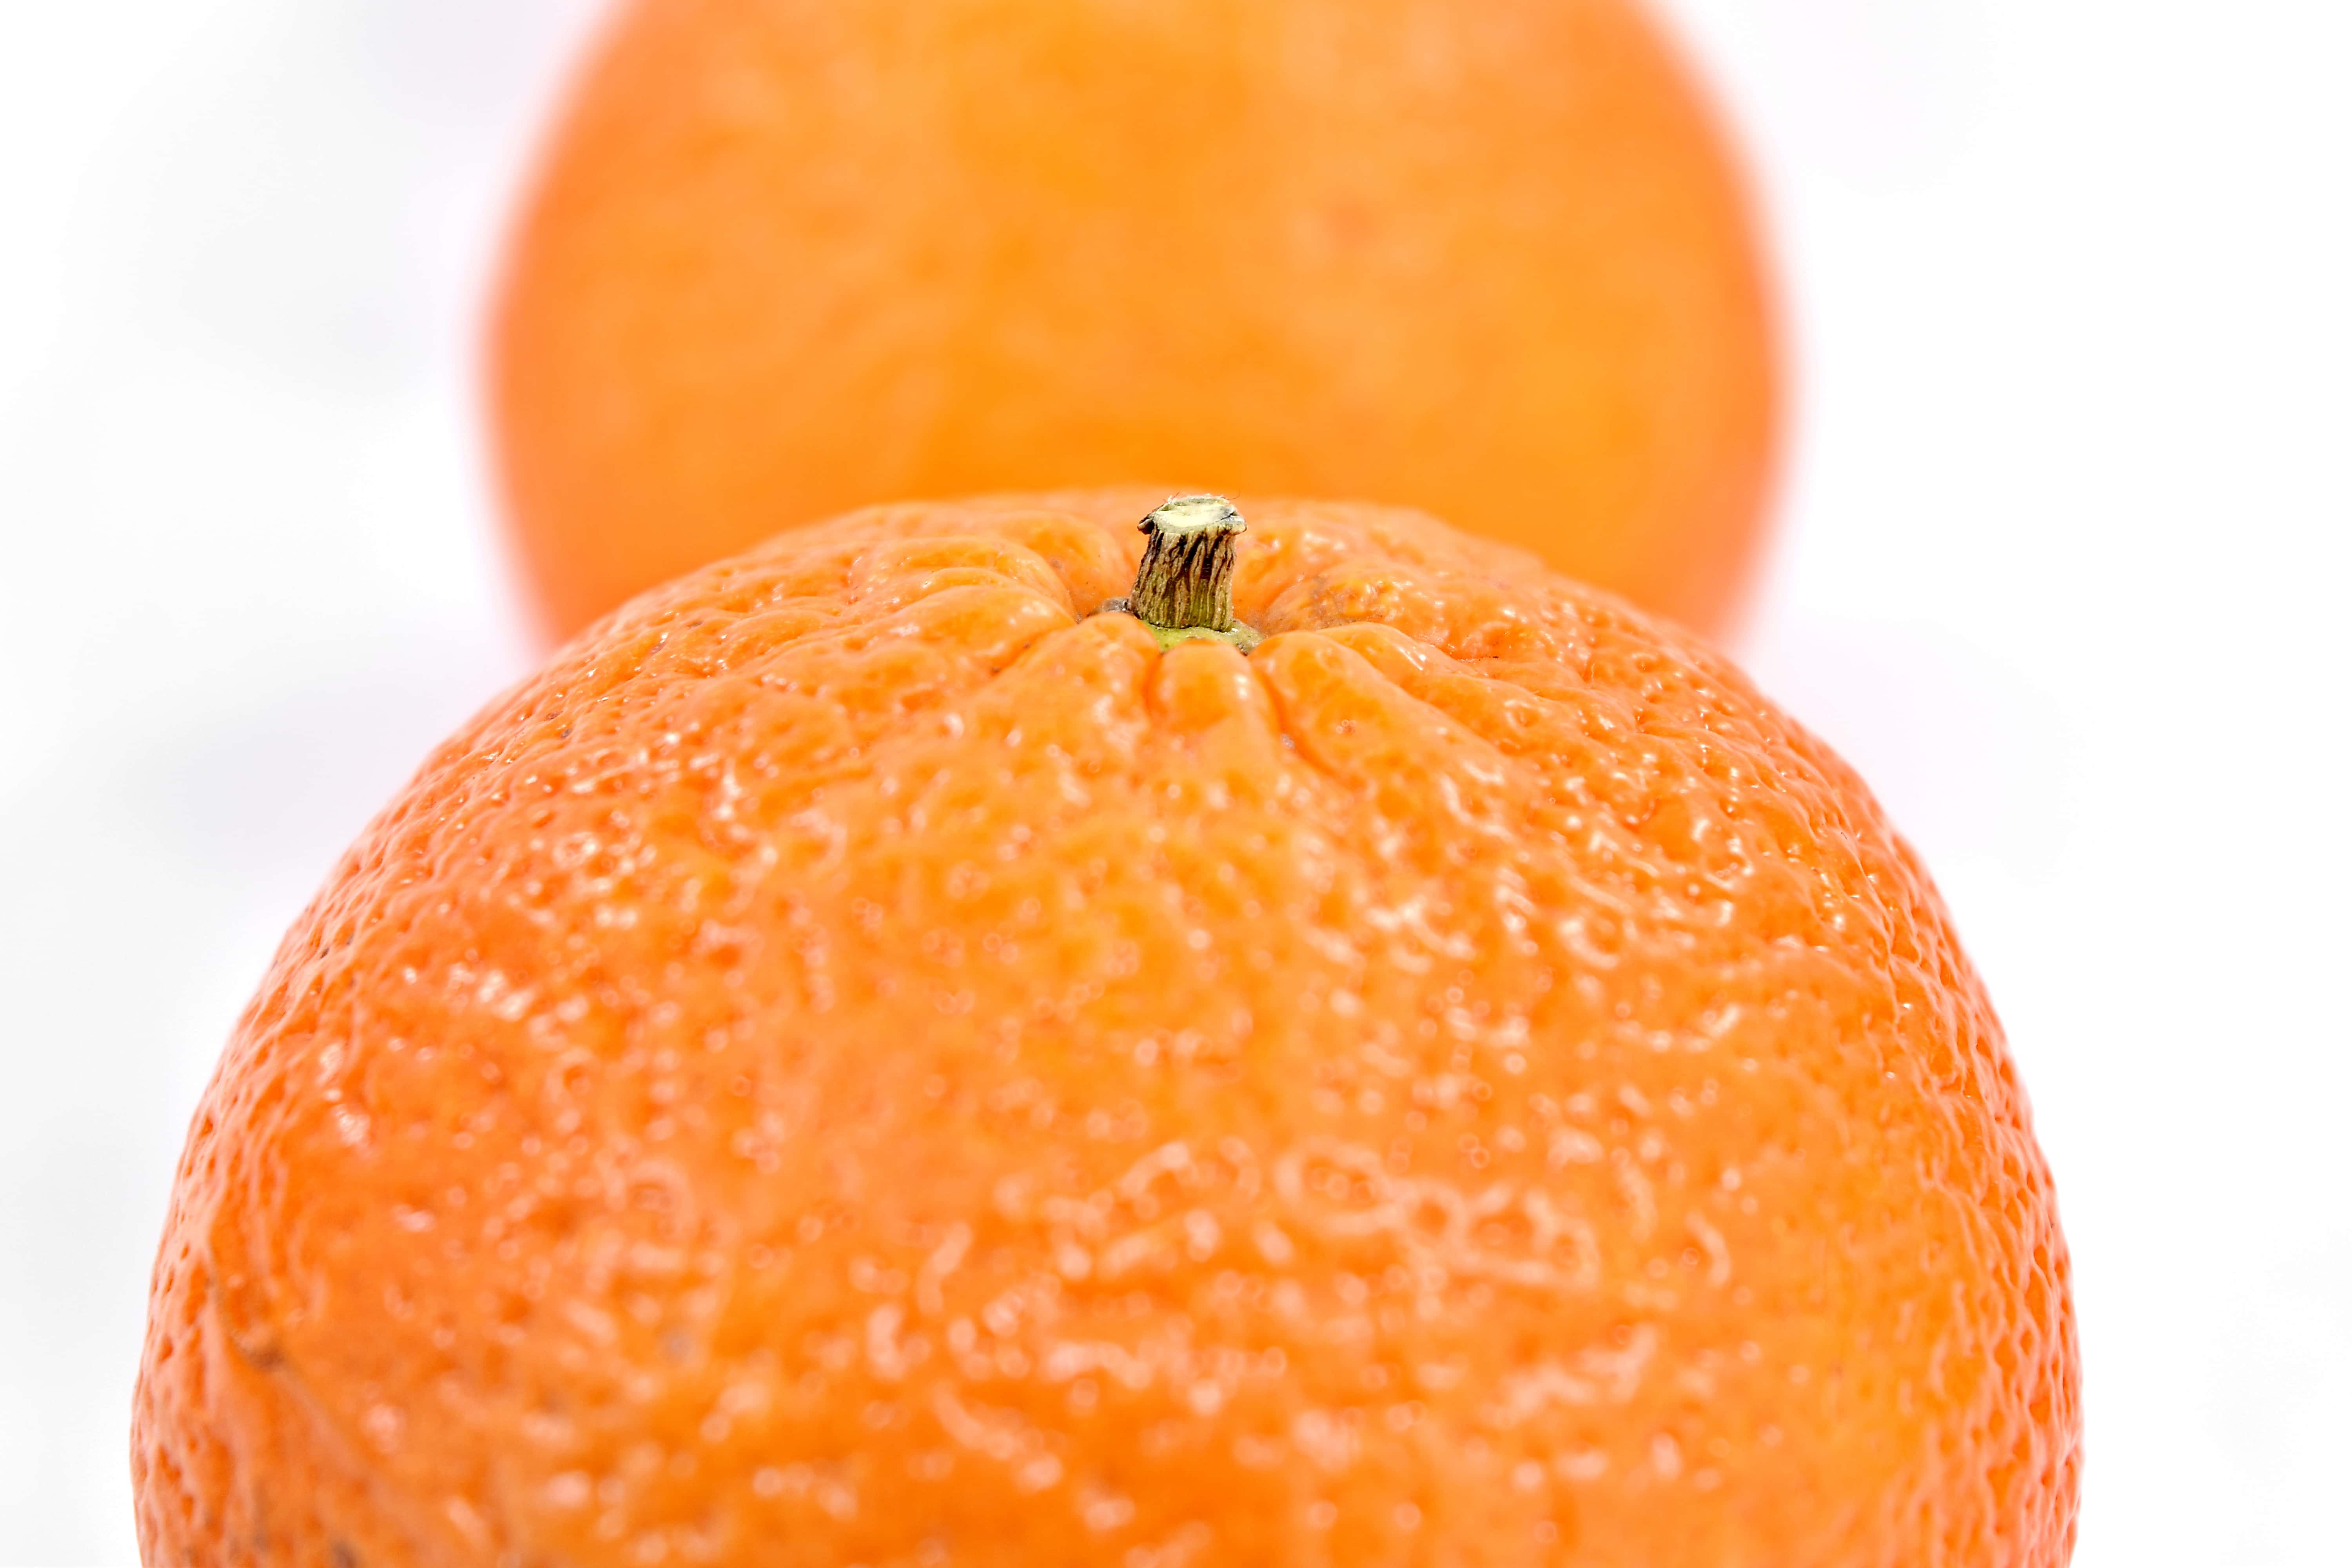 フリー写真画像 間近 オレンジの皮 オレンジ 全体 甘い フルーツ オレンジ 柑橘類 マンダリン タンジェリン